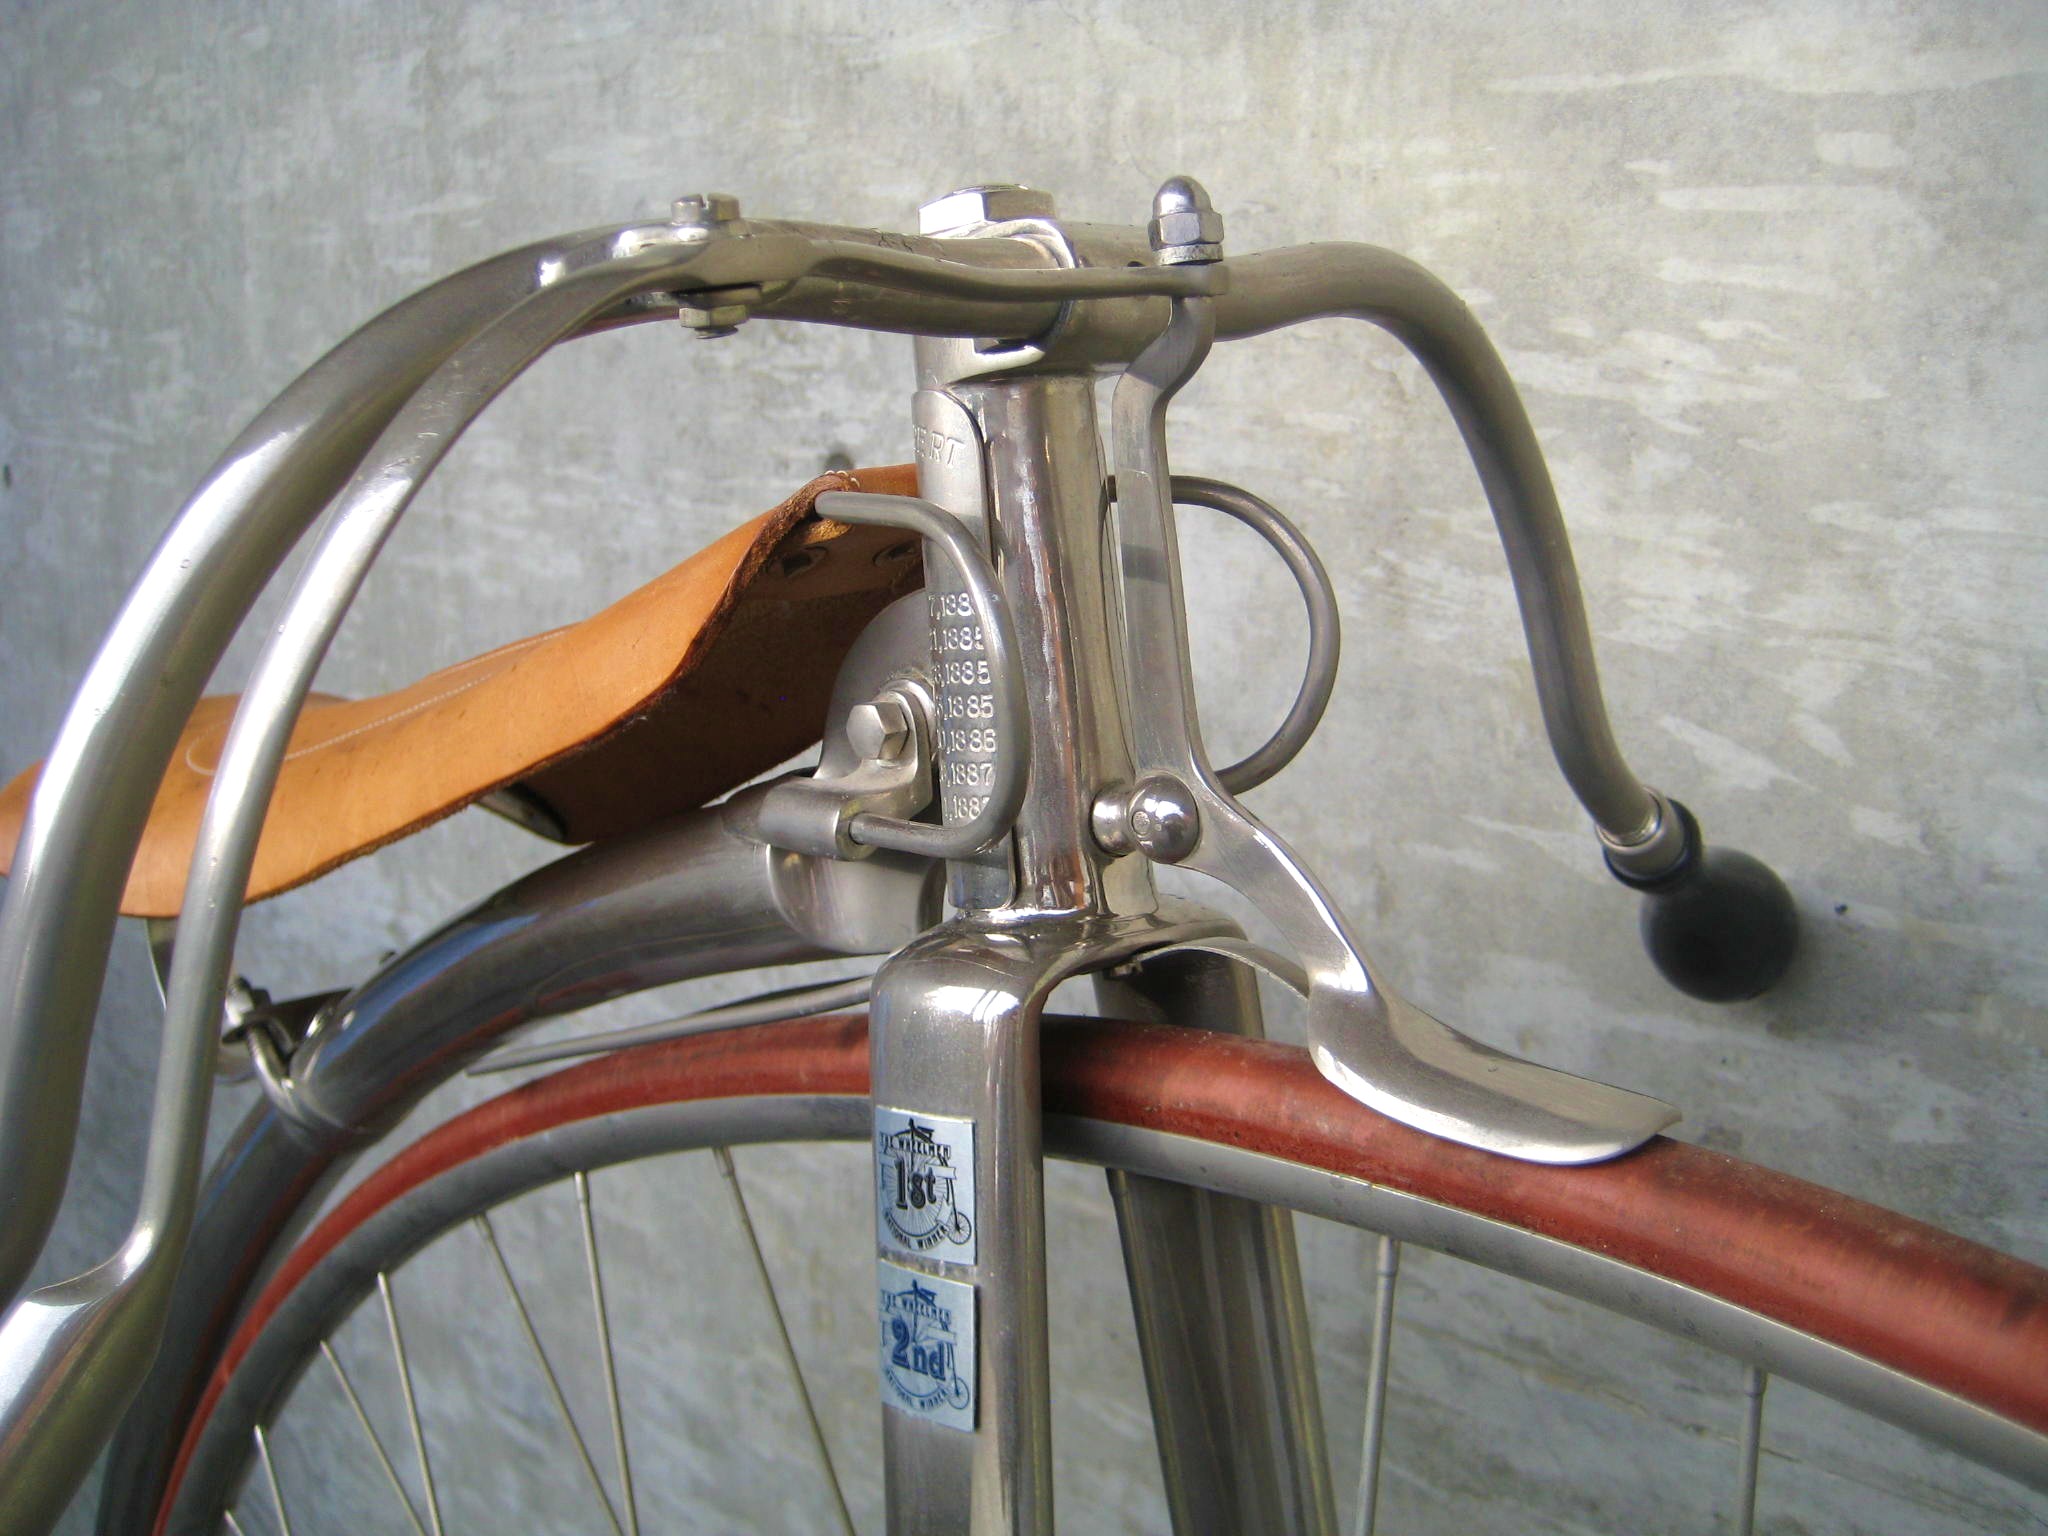 TWO PAIRS OF Brake Pads Blocks Vintage Road Bikes Bicycles Brakes OLD SCHOOL SYD 